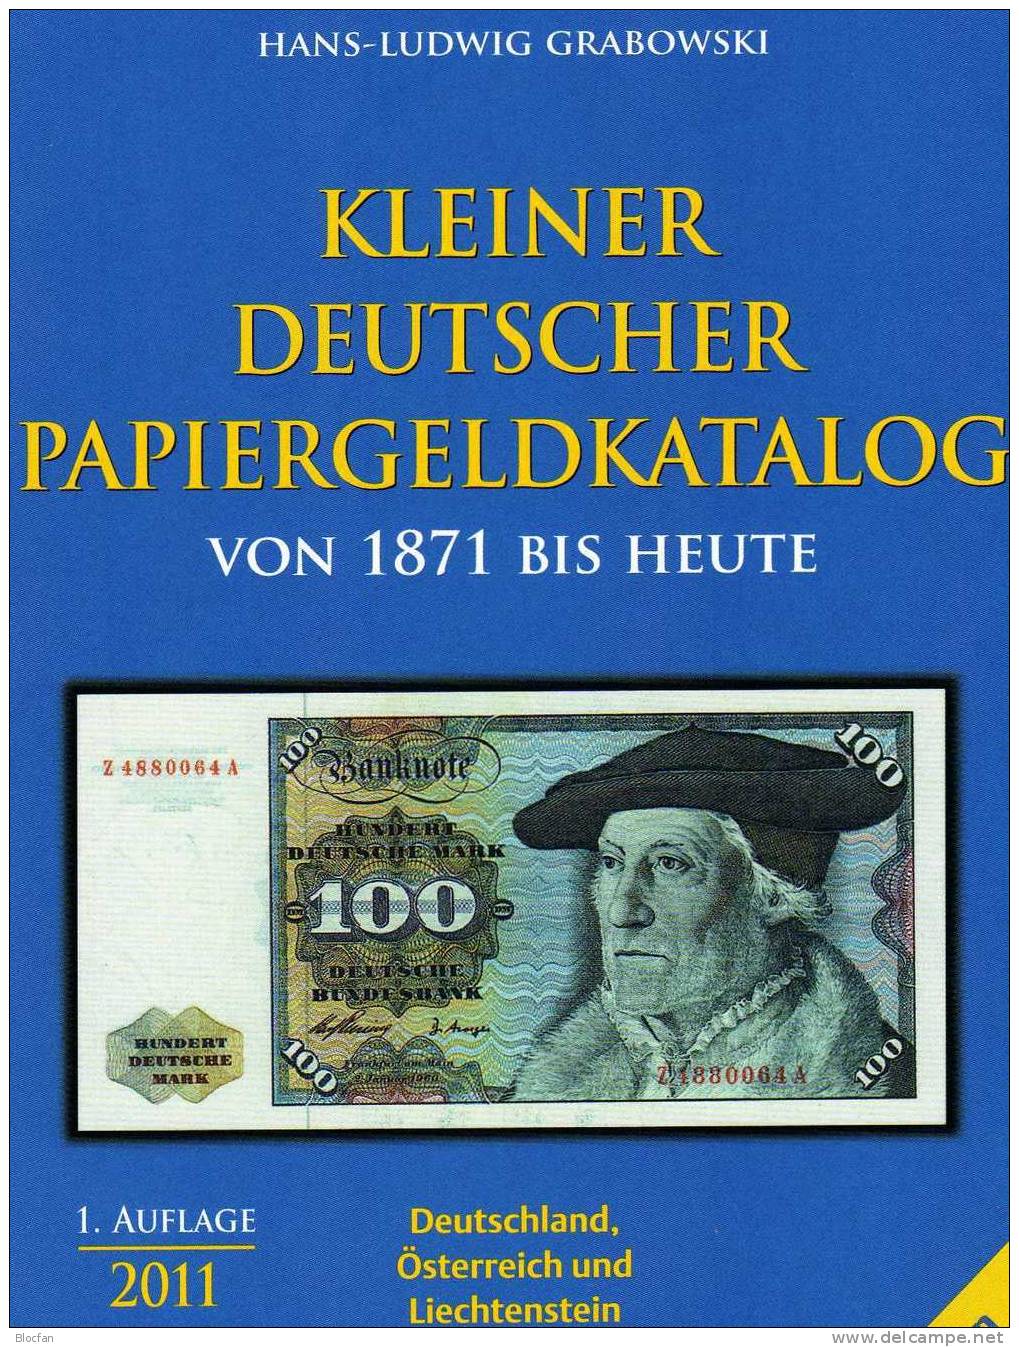 Banknoten Katalog Deutschland 2011 neu 12€ für Papiergeld neueste Auflage mit EURO-Banknoten Grabowski Battenberg Verlag